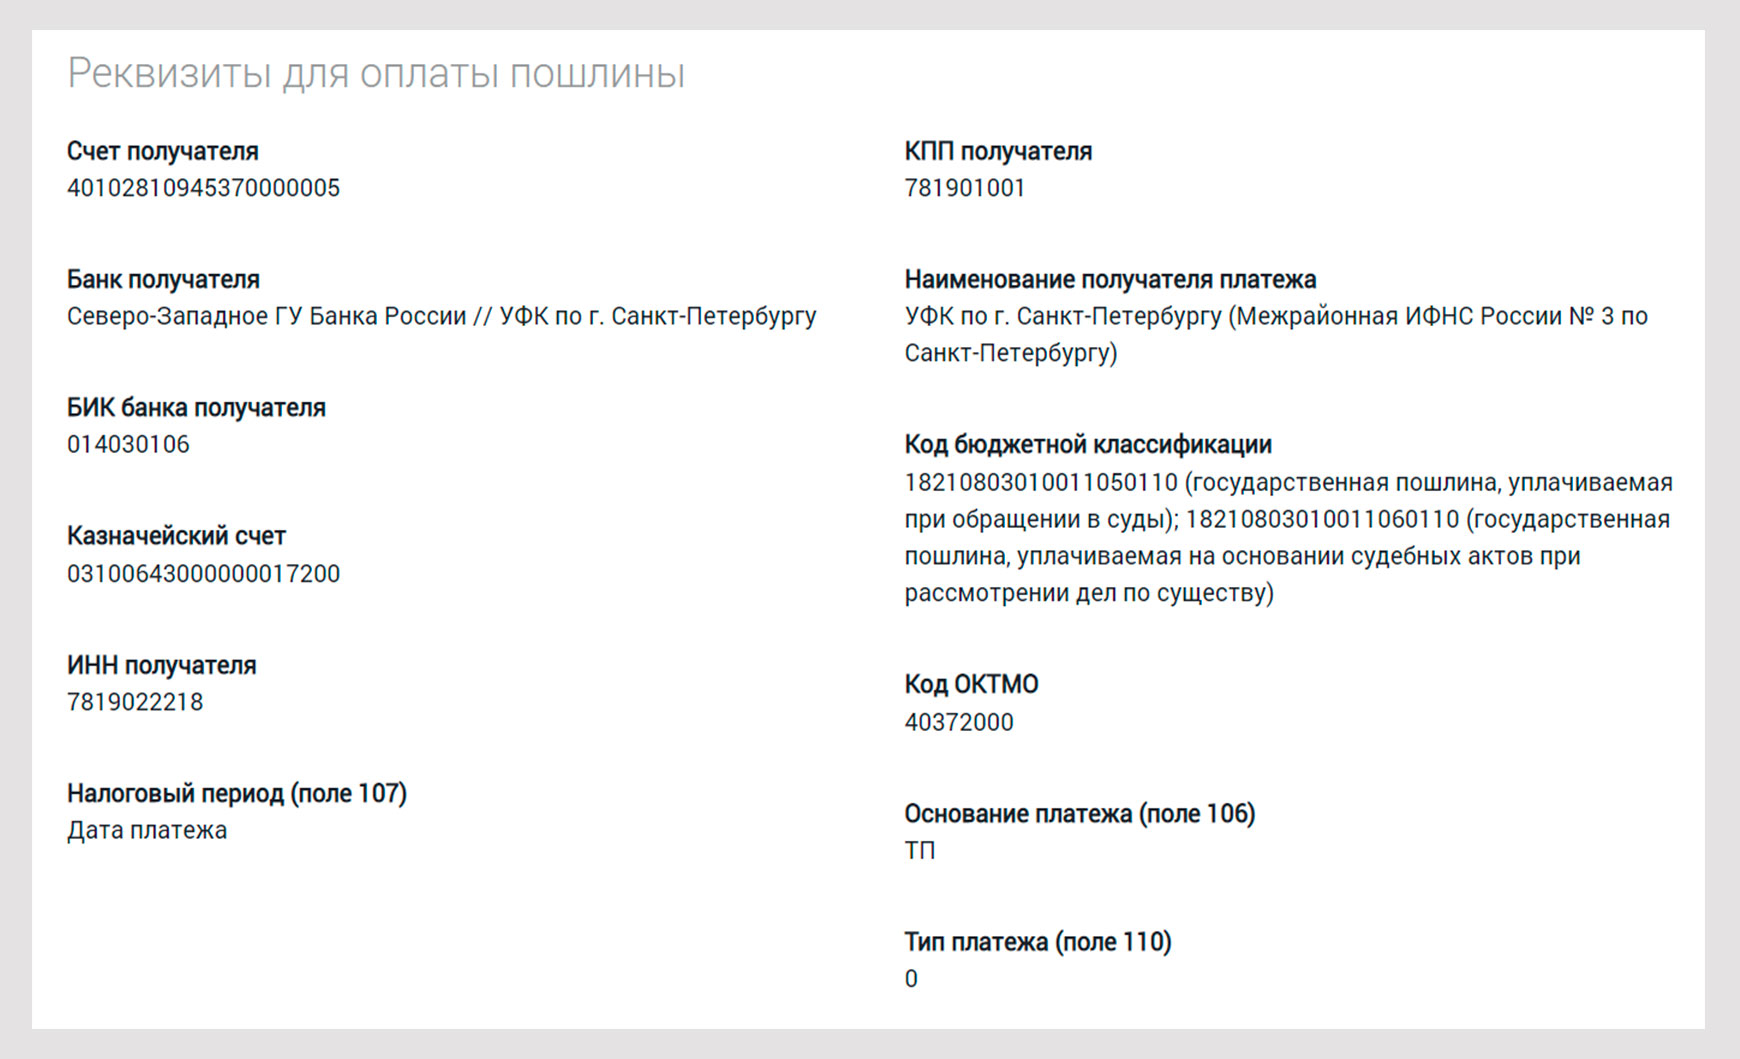 Реквизиты для оплаты пошлины по 157 судебному участку СПб.